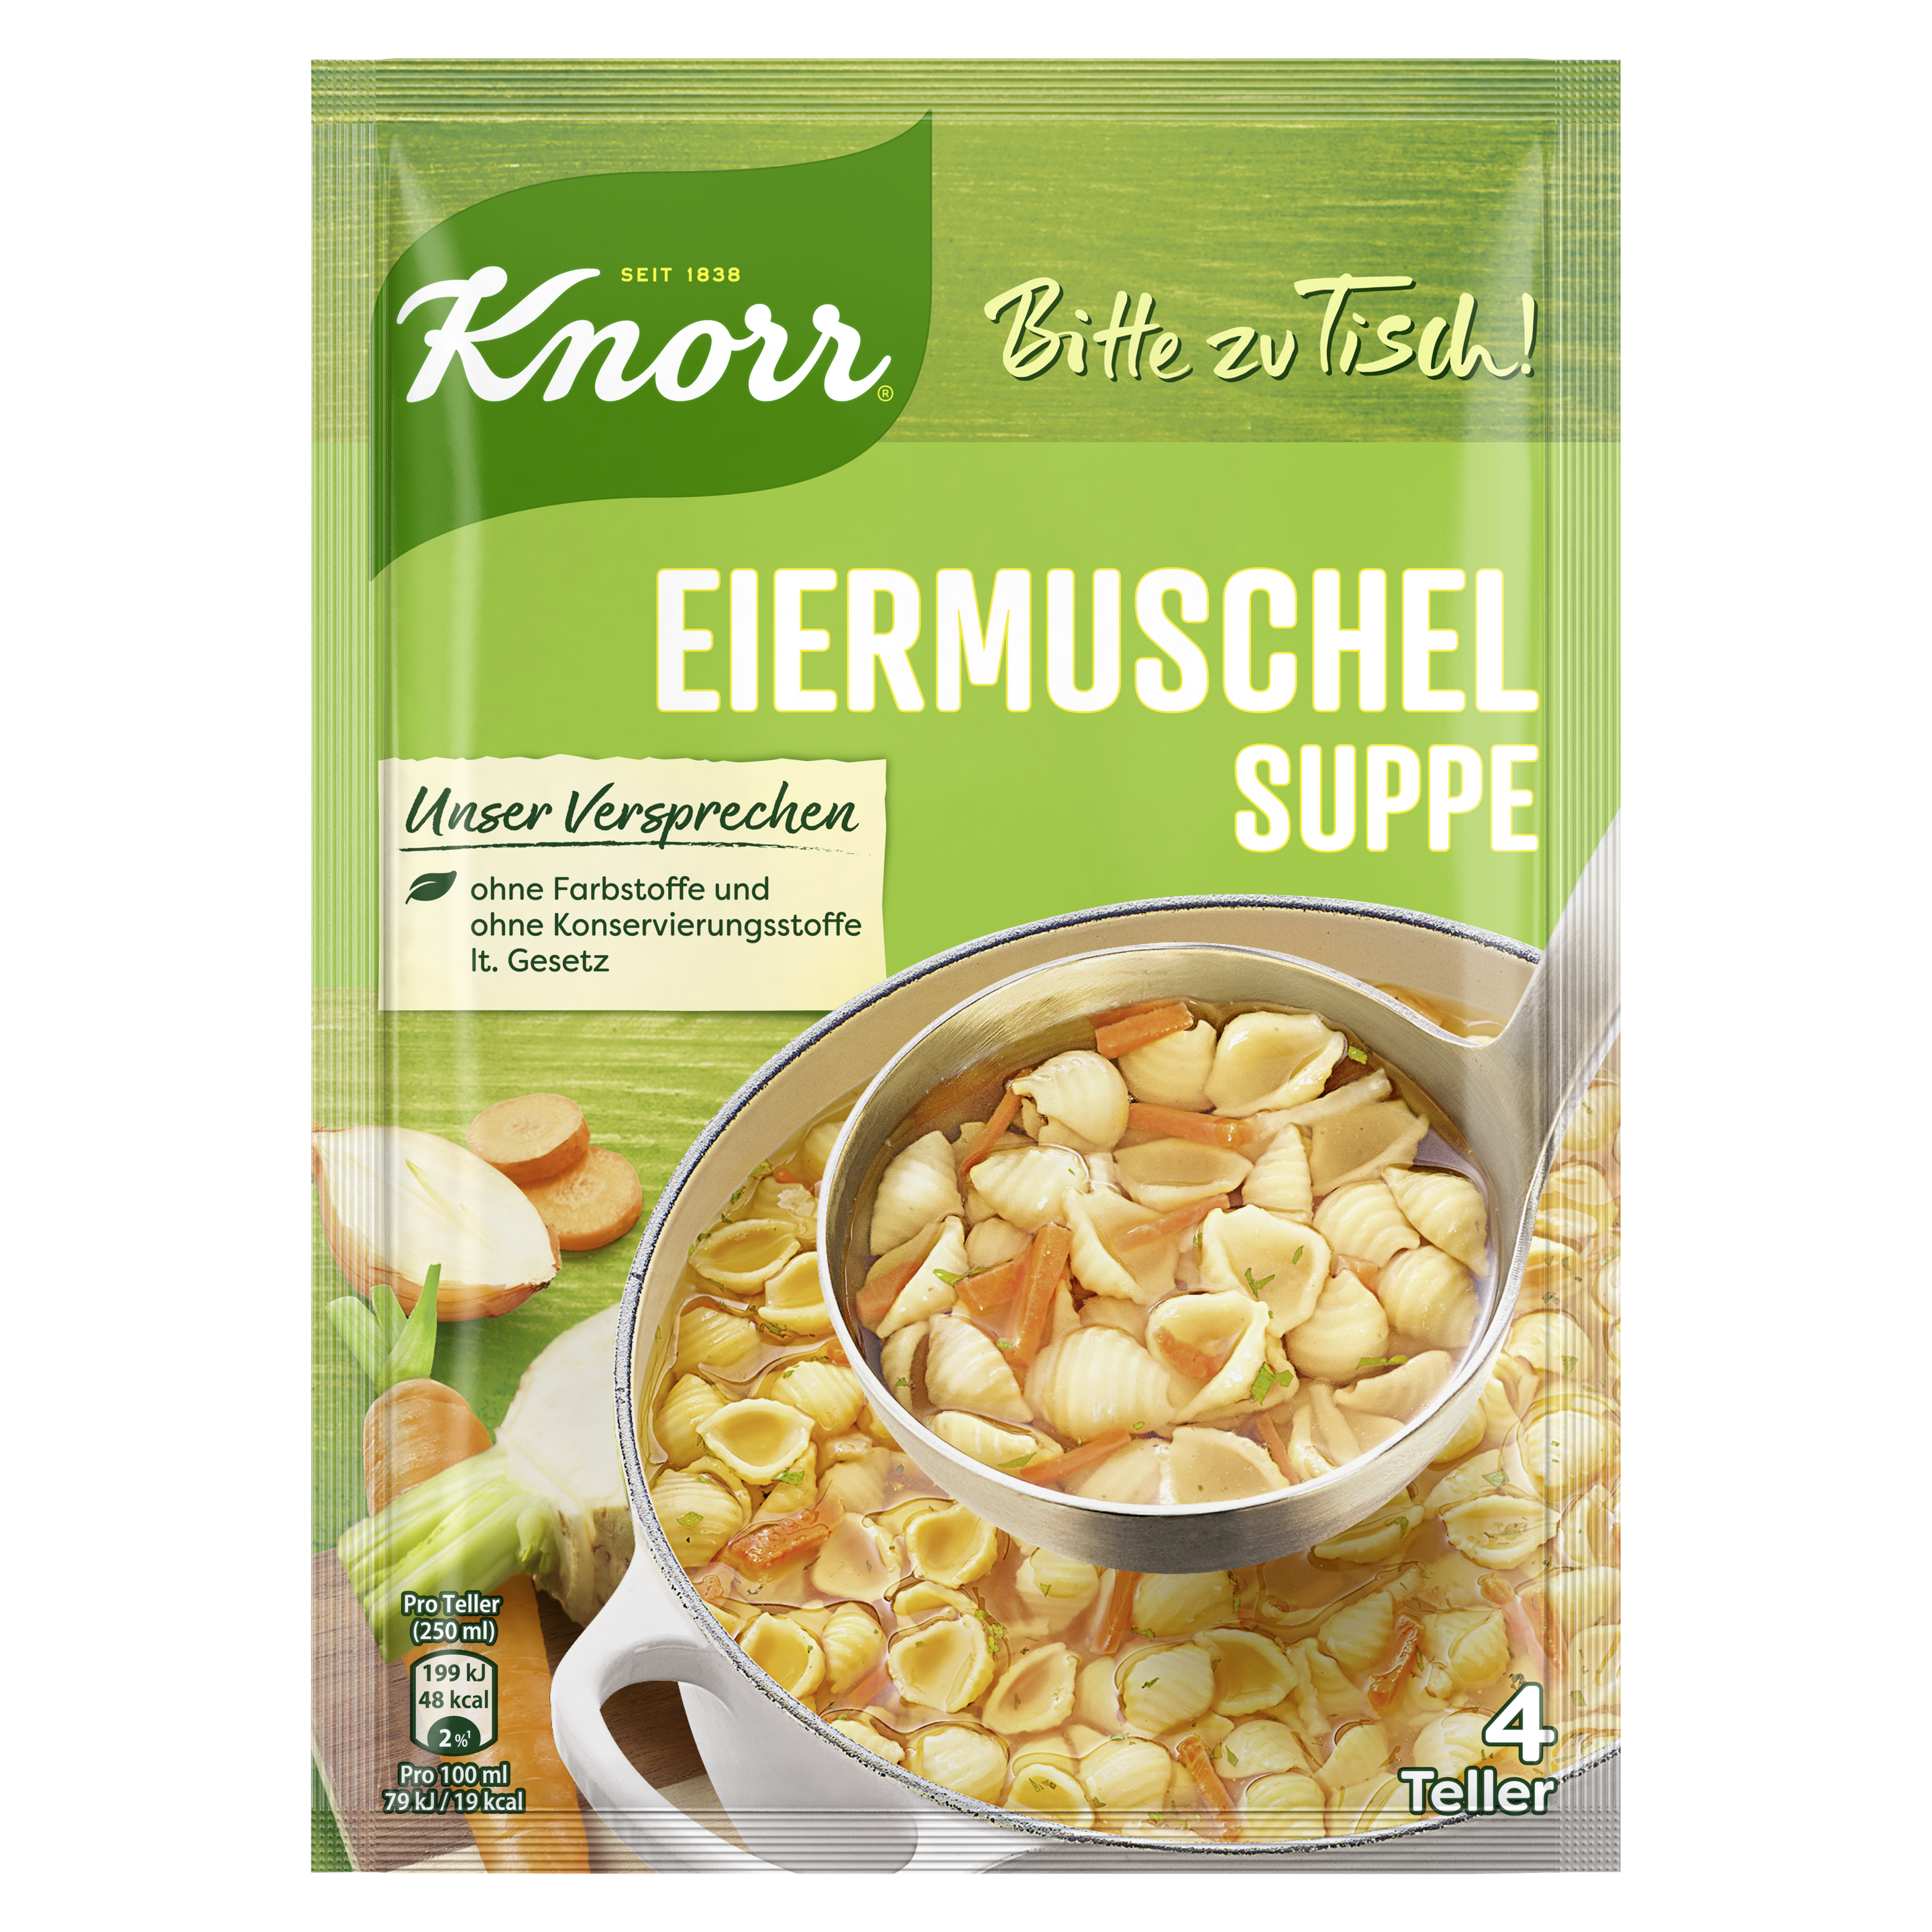 Knorr Bitte zu Tisch! Eiermuschel Suppe 4 Teller